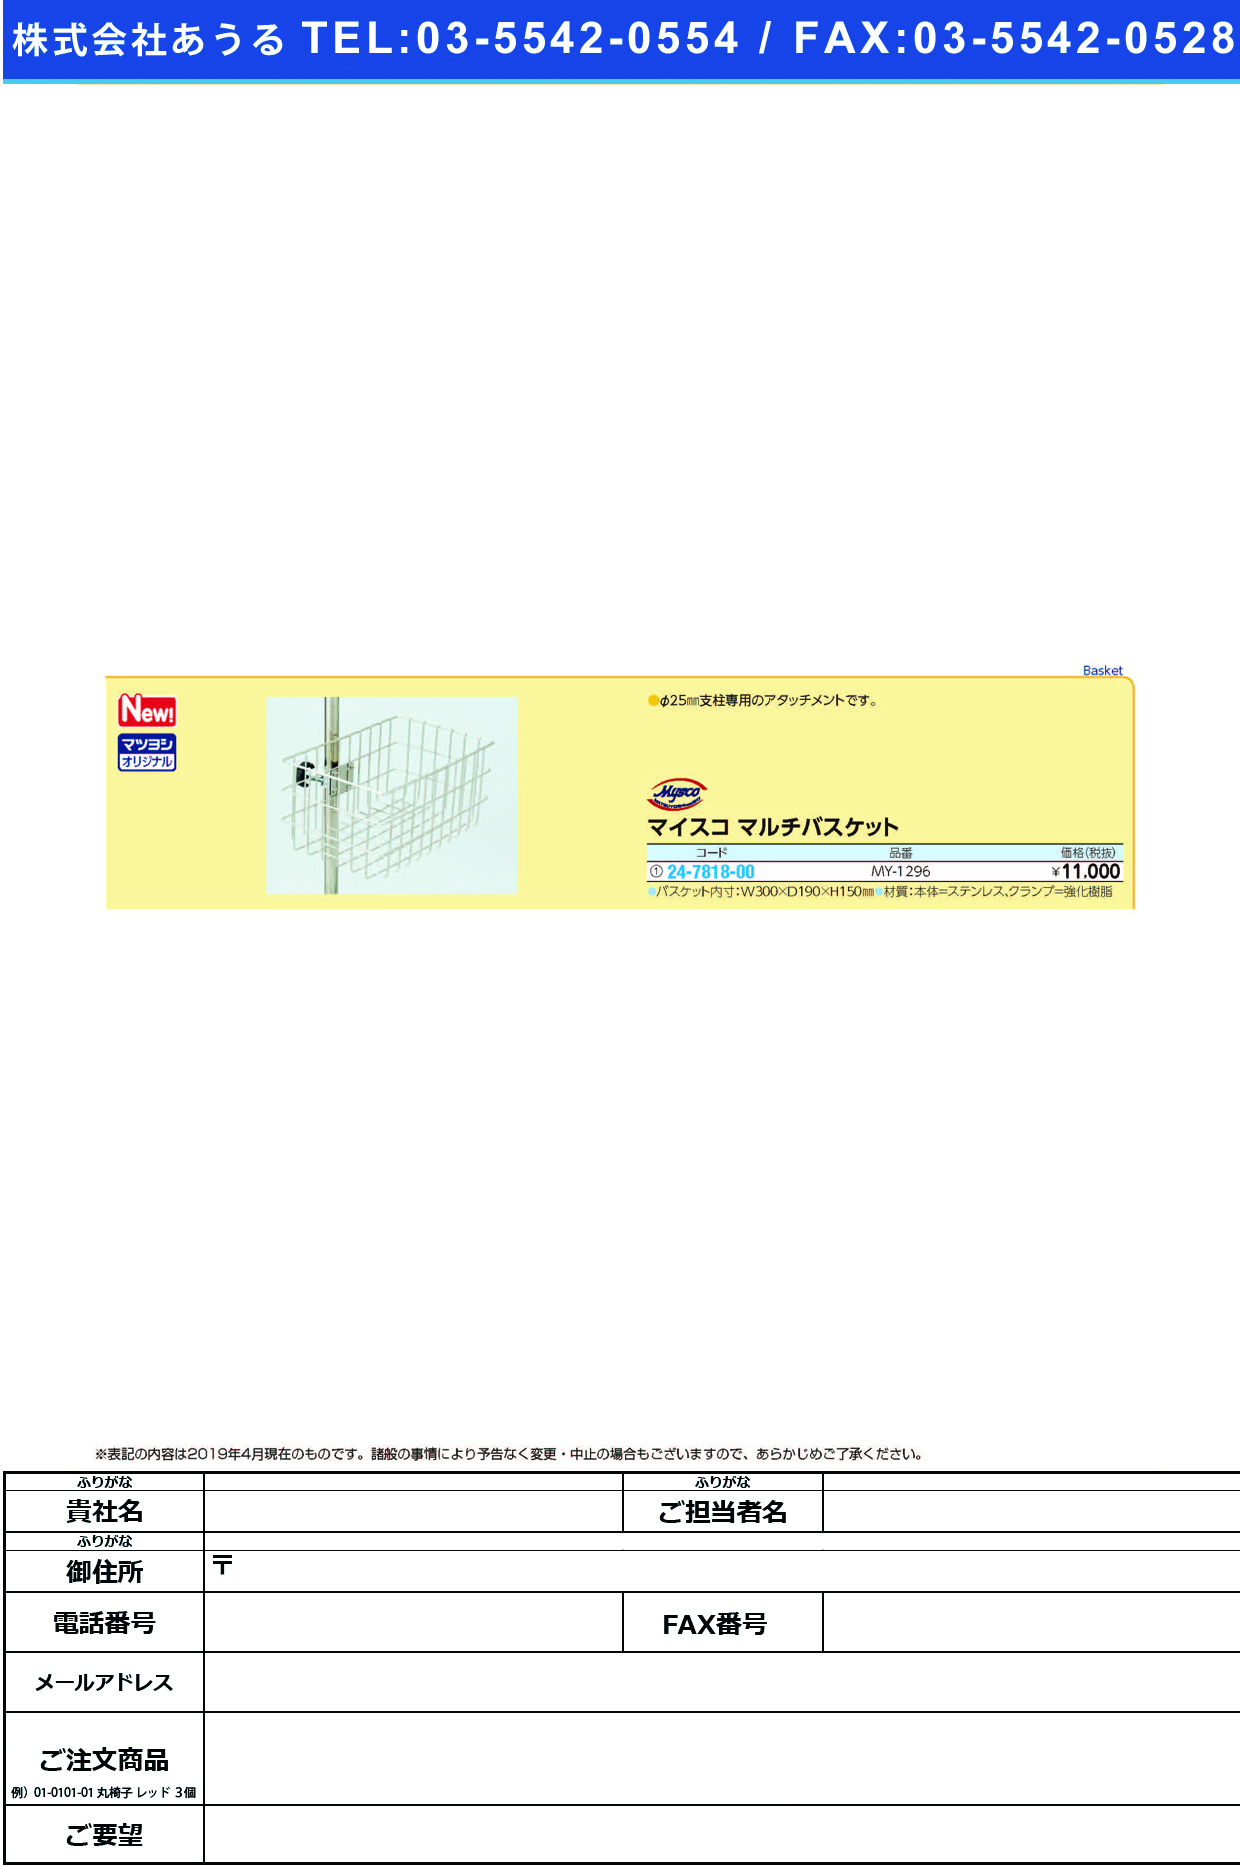 (24-7818-00)マイスコマルチバスケットMY-1296 ﾏｲｽｺﾏﾙﾁﾊﾞｽｹｯﾄ(松吉医科器械)【1個単位】【2019年カタログ商品】